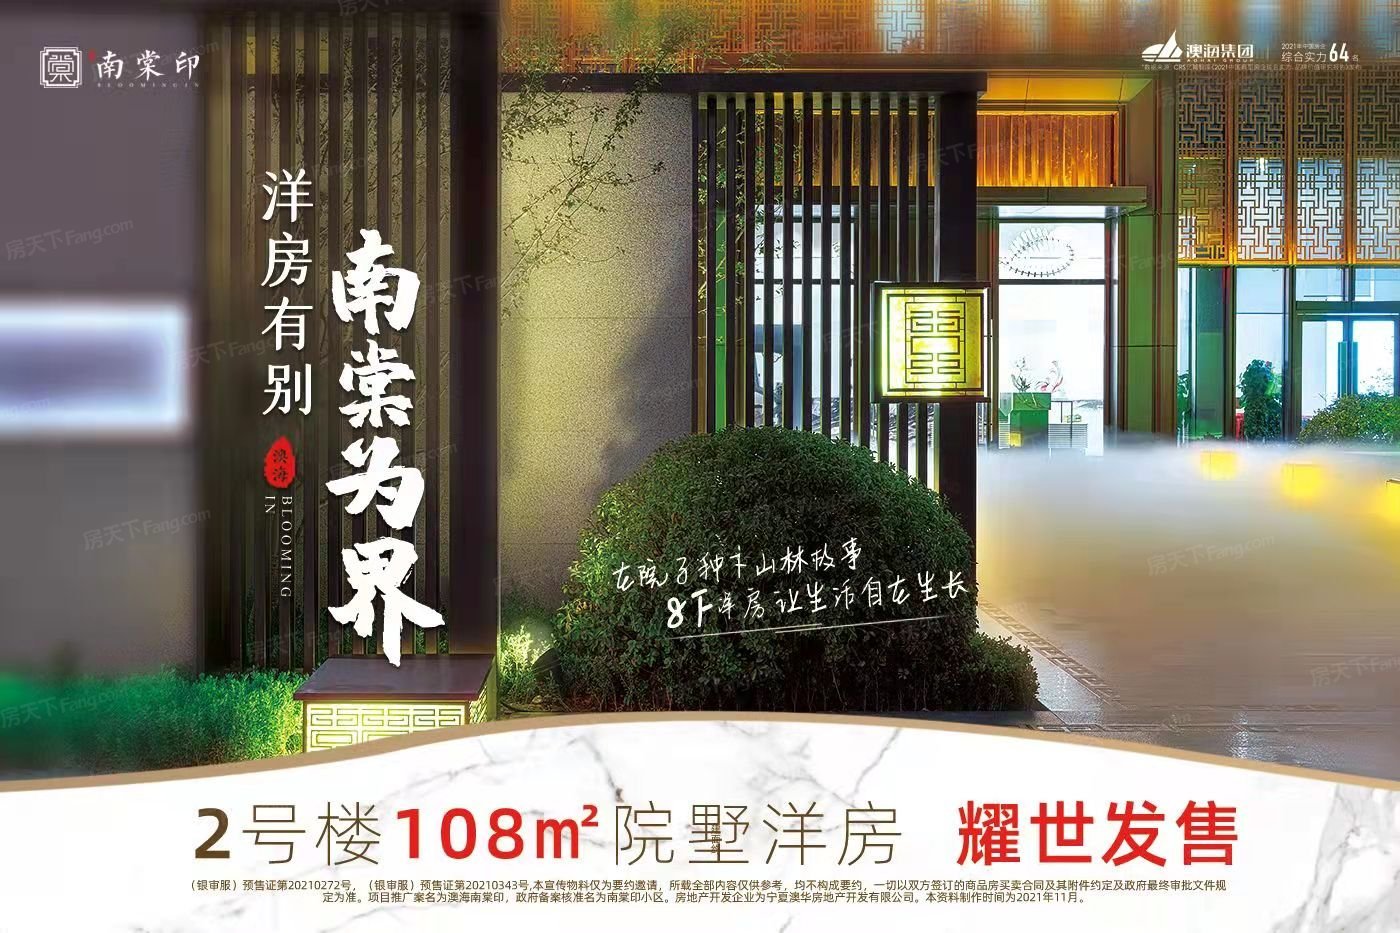 想买房的朋友看过来，11月银川 兴庆区区 热门楼盘最新动态有你想要的一切！